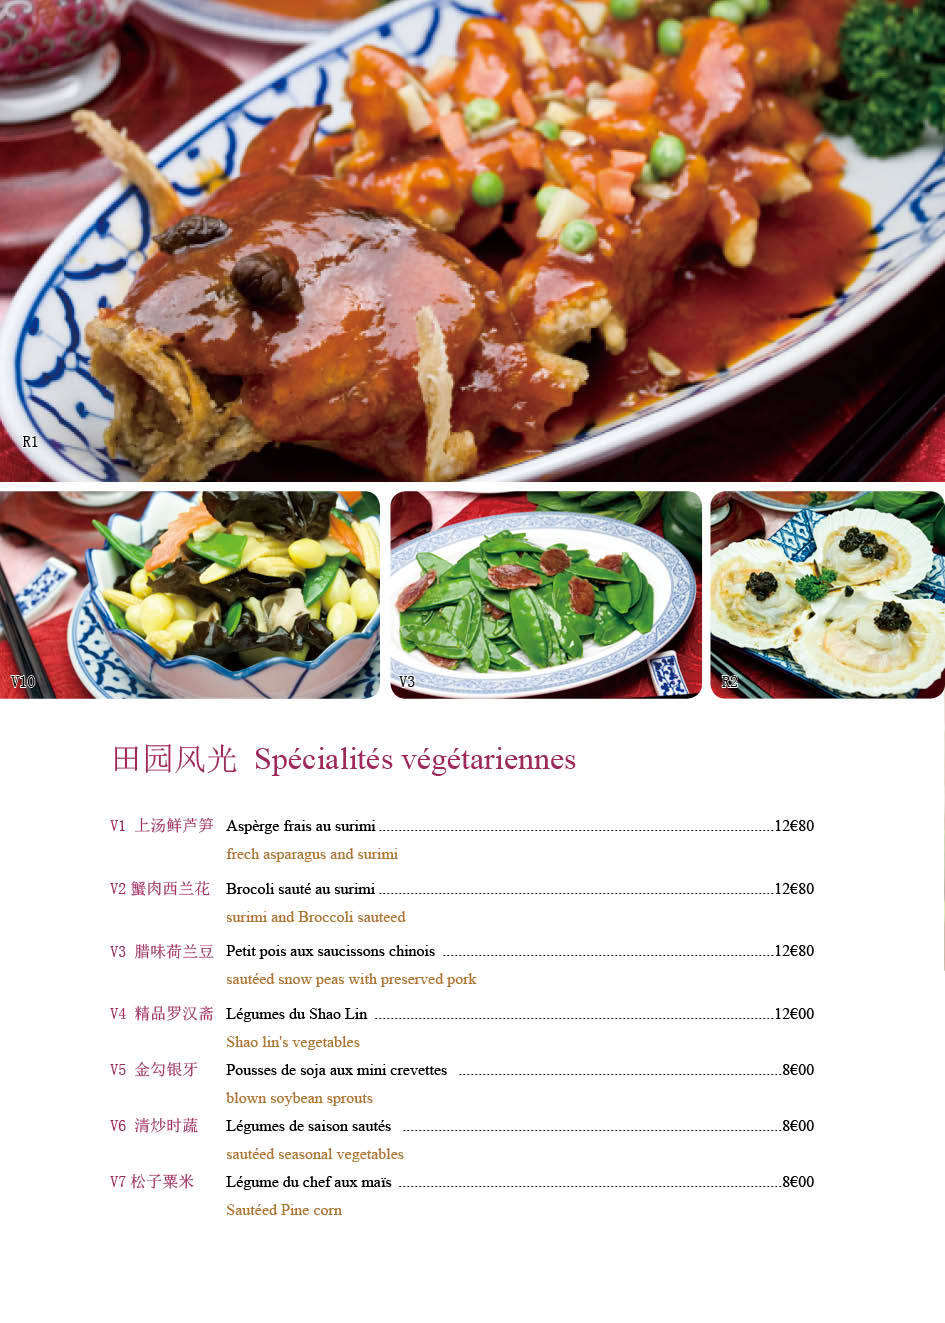 腾龙阁-法国中餐厅menu设计图7